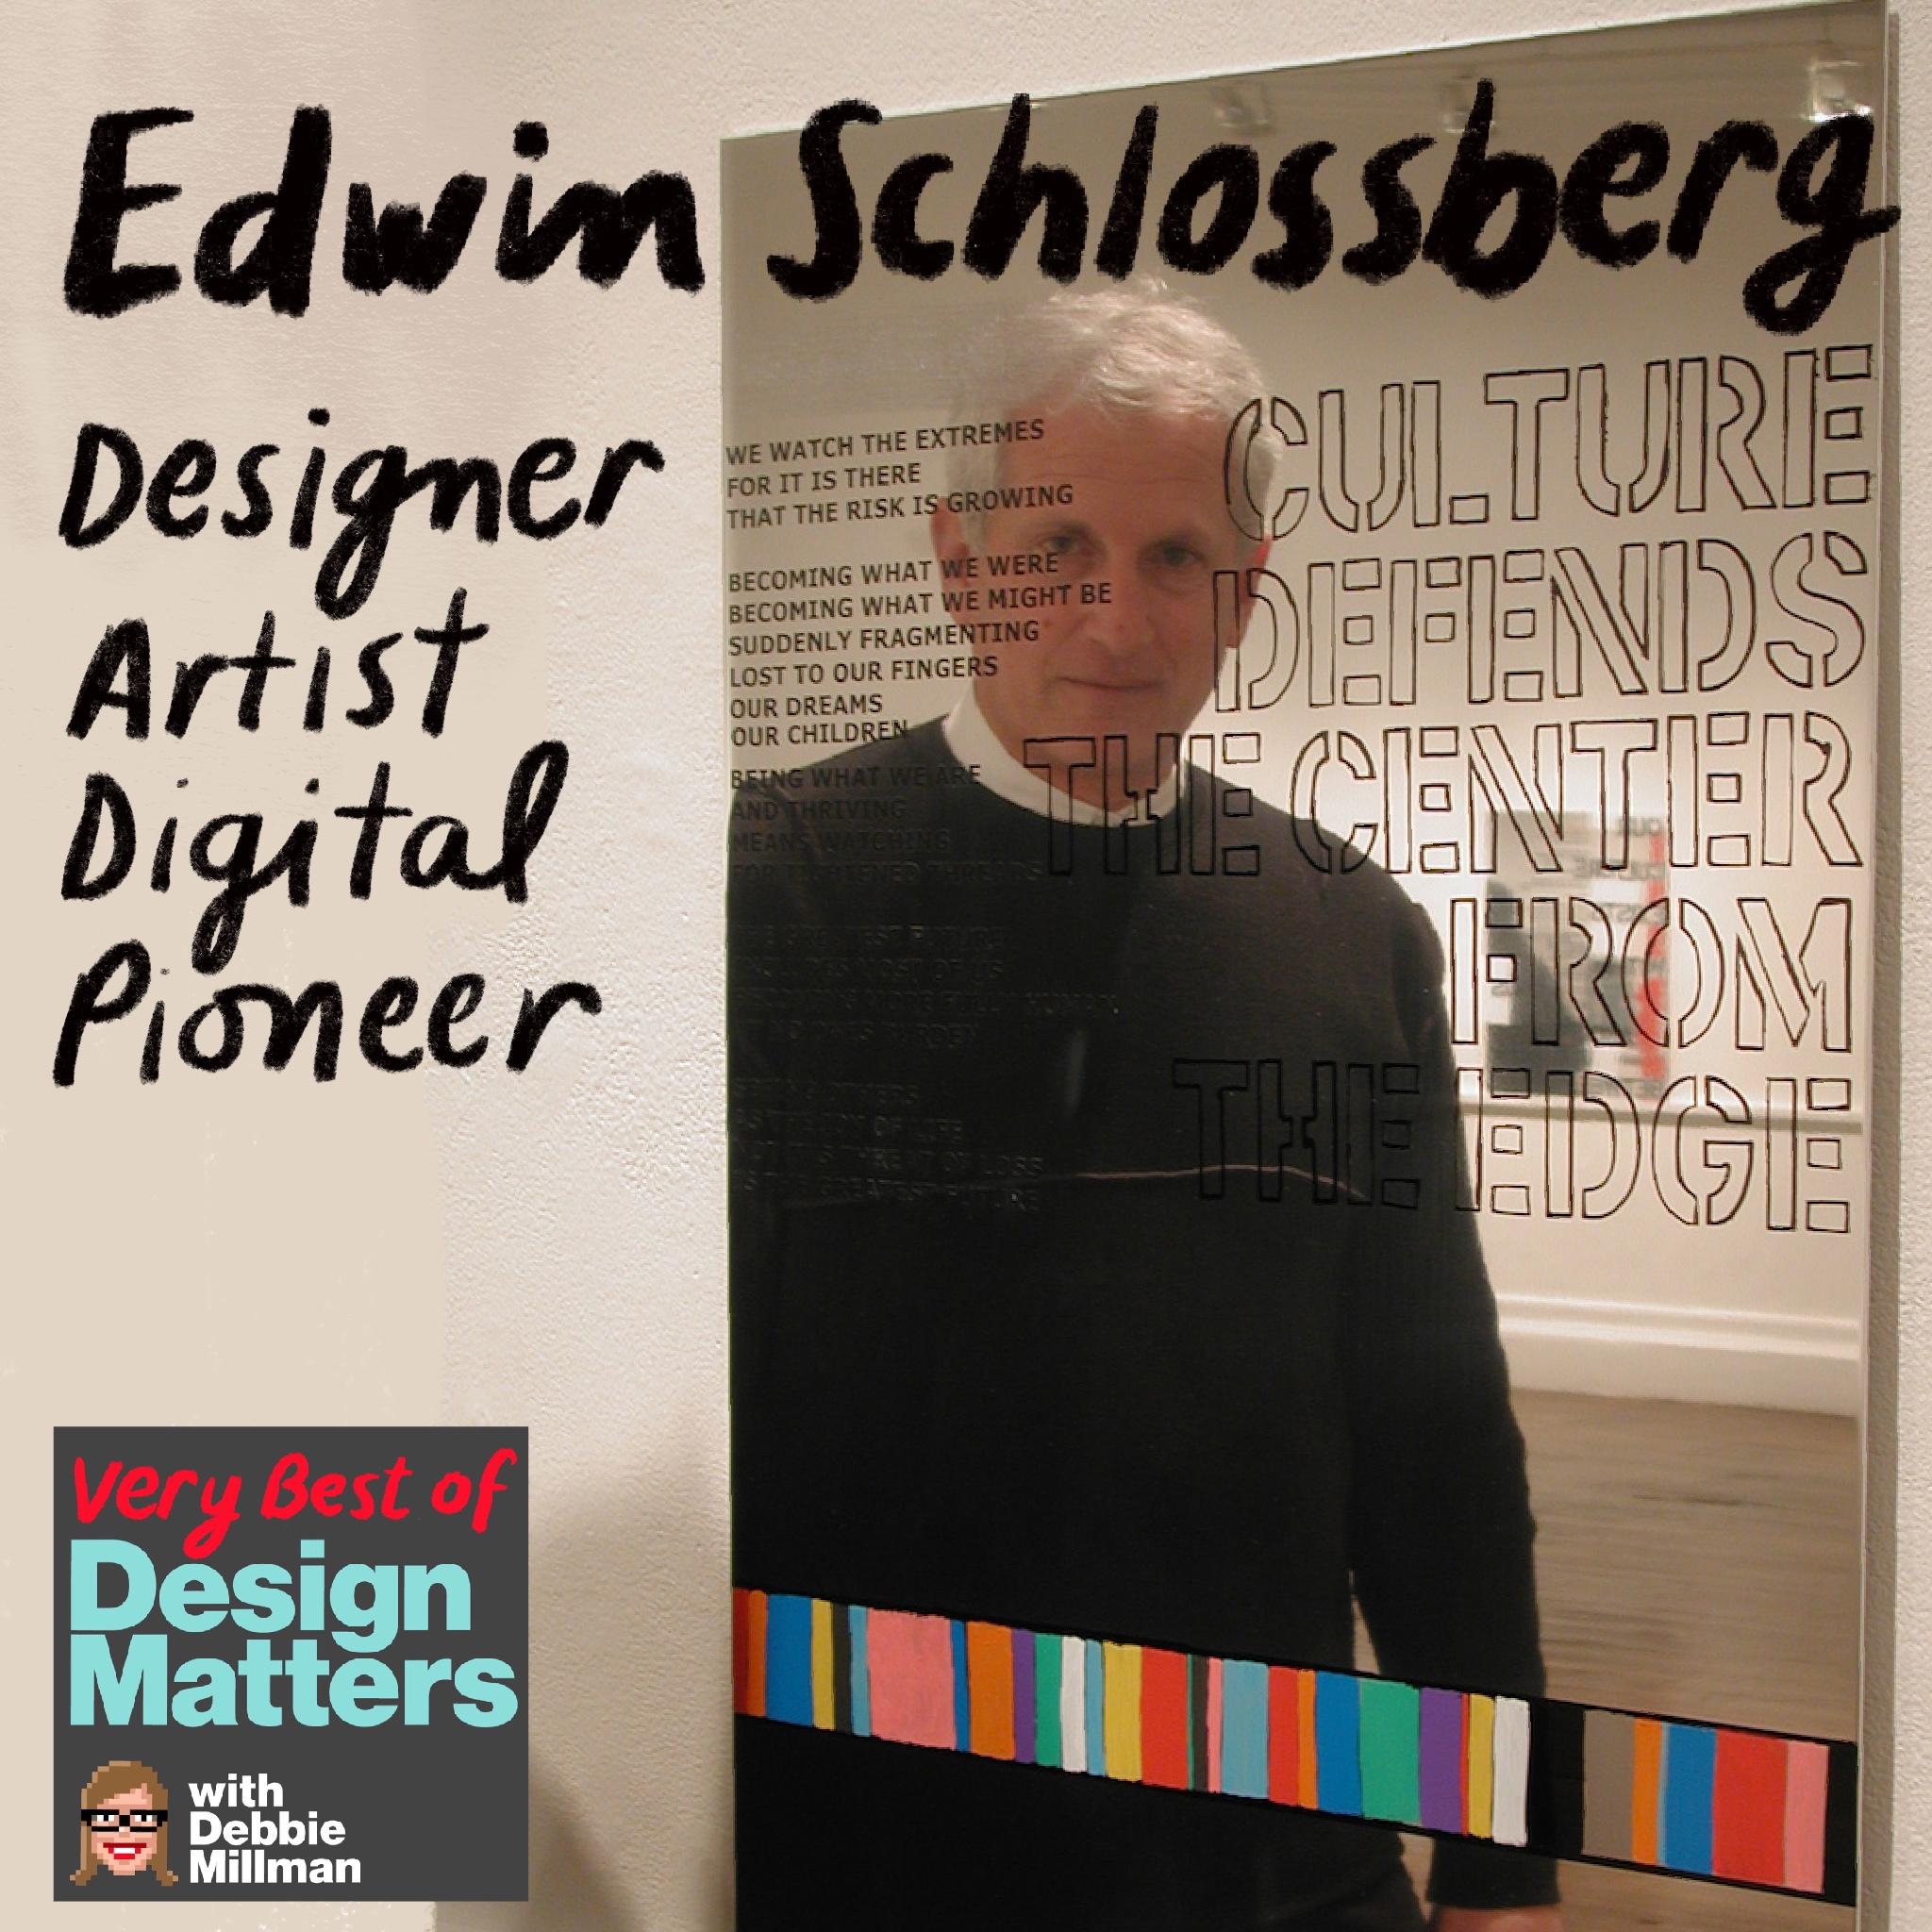 Thumbnail for "Best of Design Matters: Edwin Schlossberg".